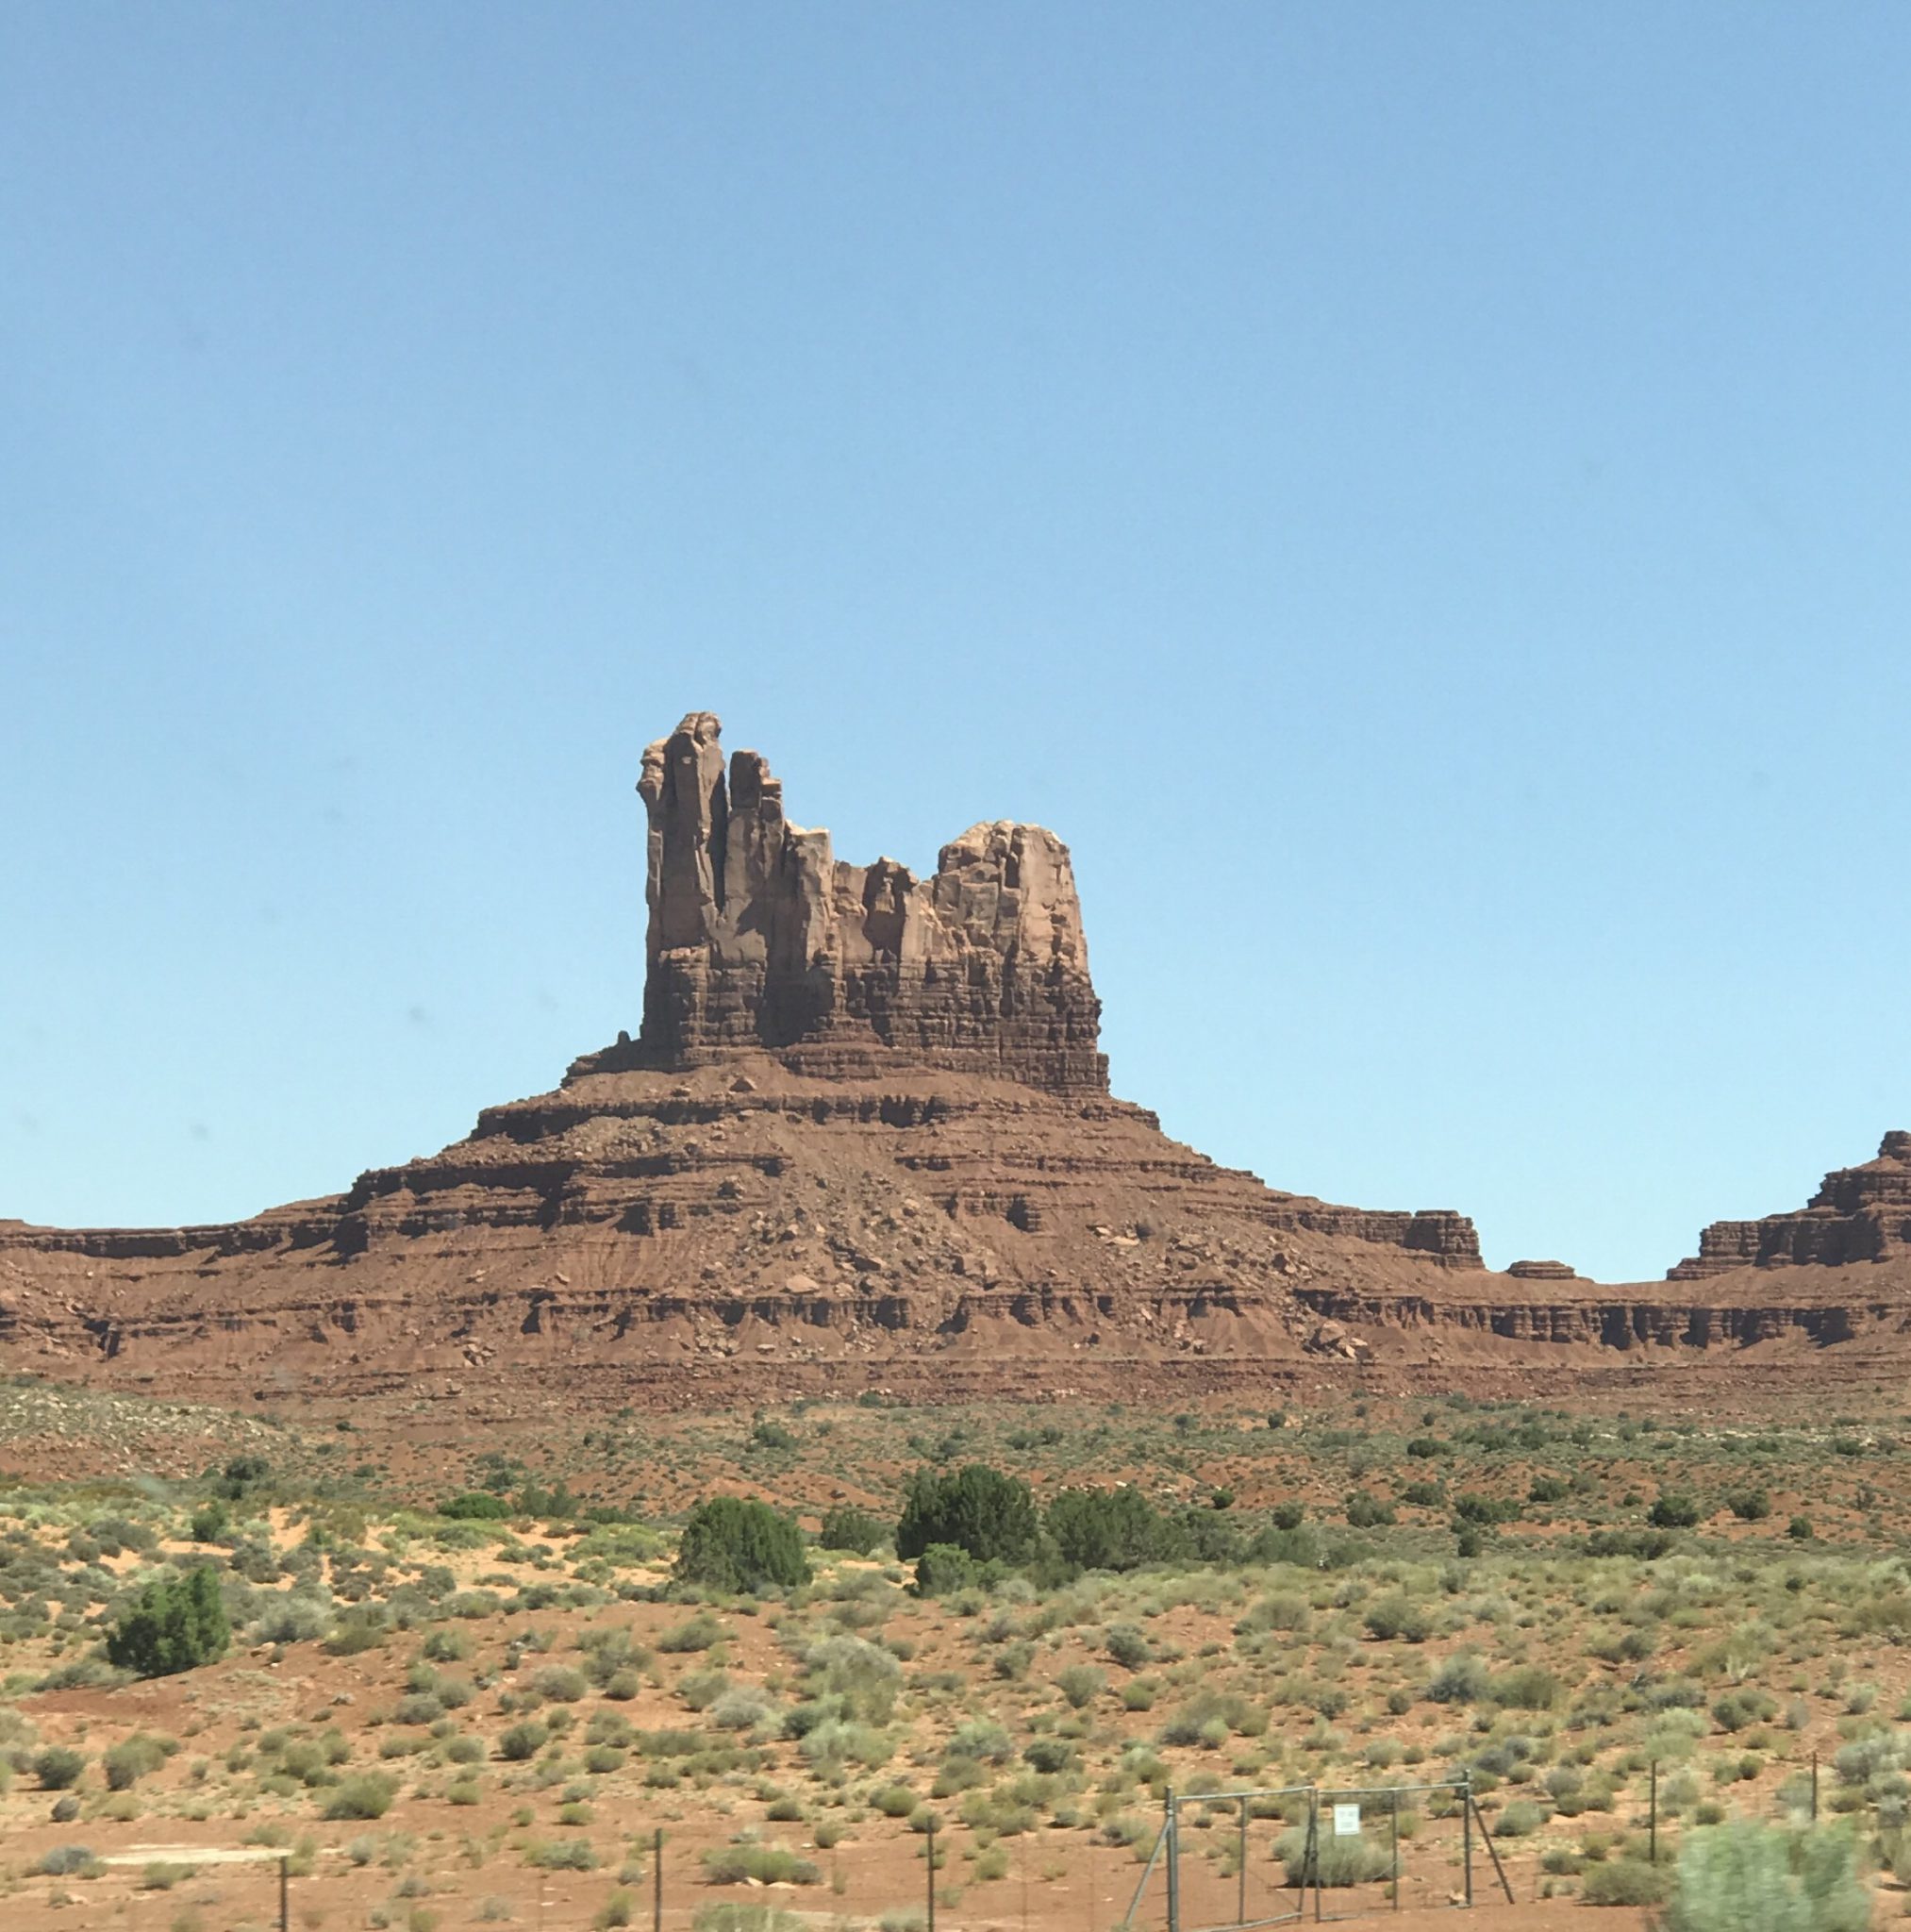 The Road Less Traveled – Visiting Northern Arizona